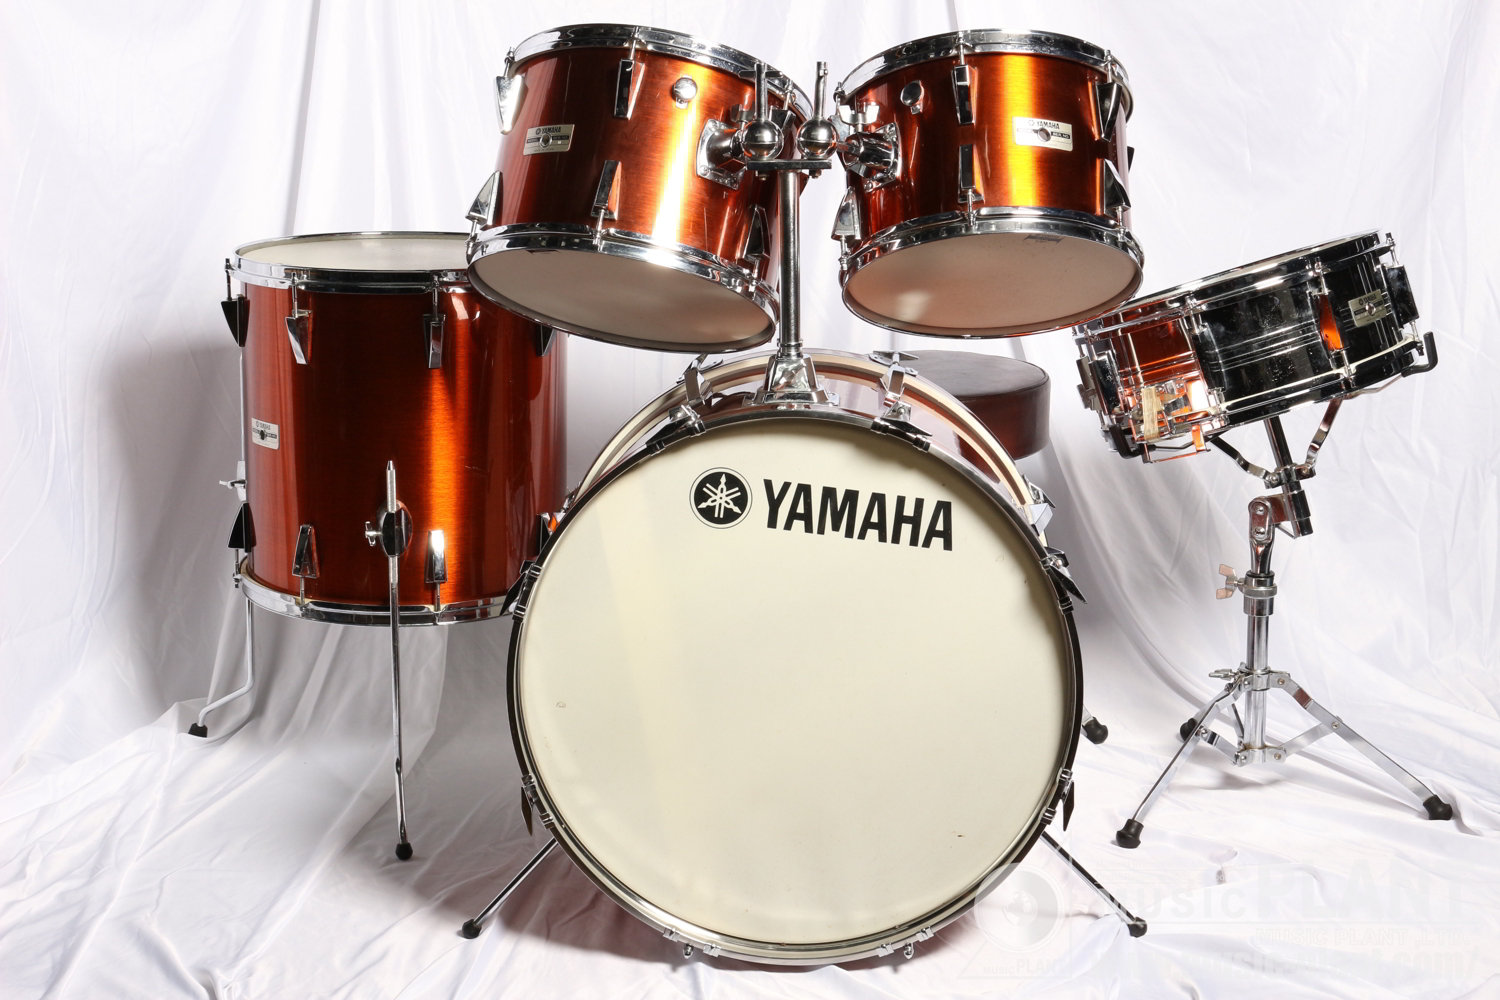 YAMAHA ドラムセットYD-5000 Series Drum Set中古()売却済みです 